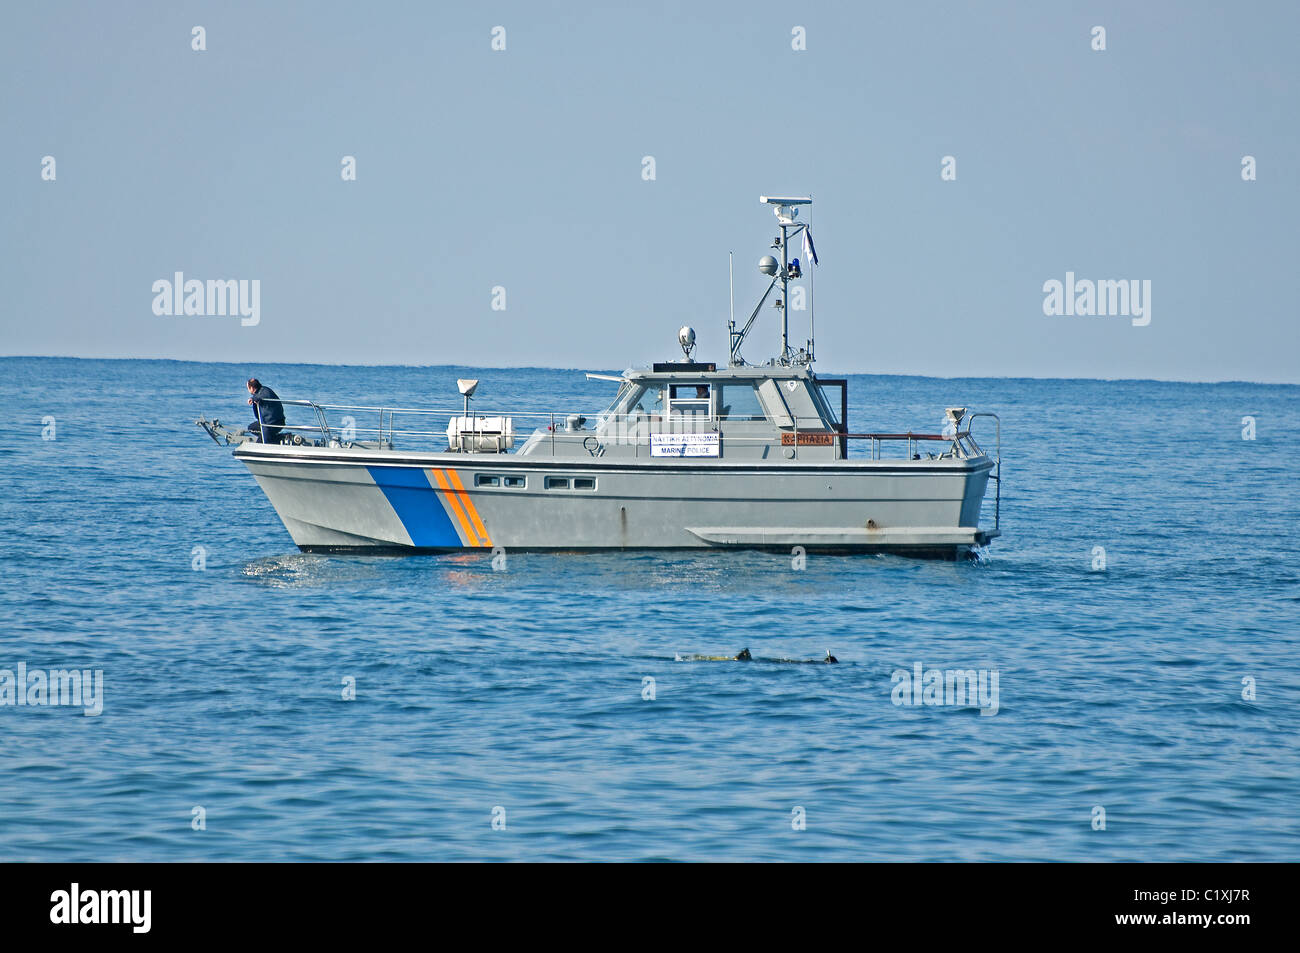 Bateau de police pour la mer recherche personne disparue Banque D'Images